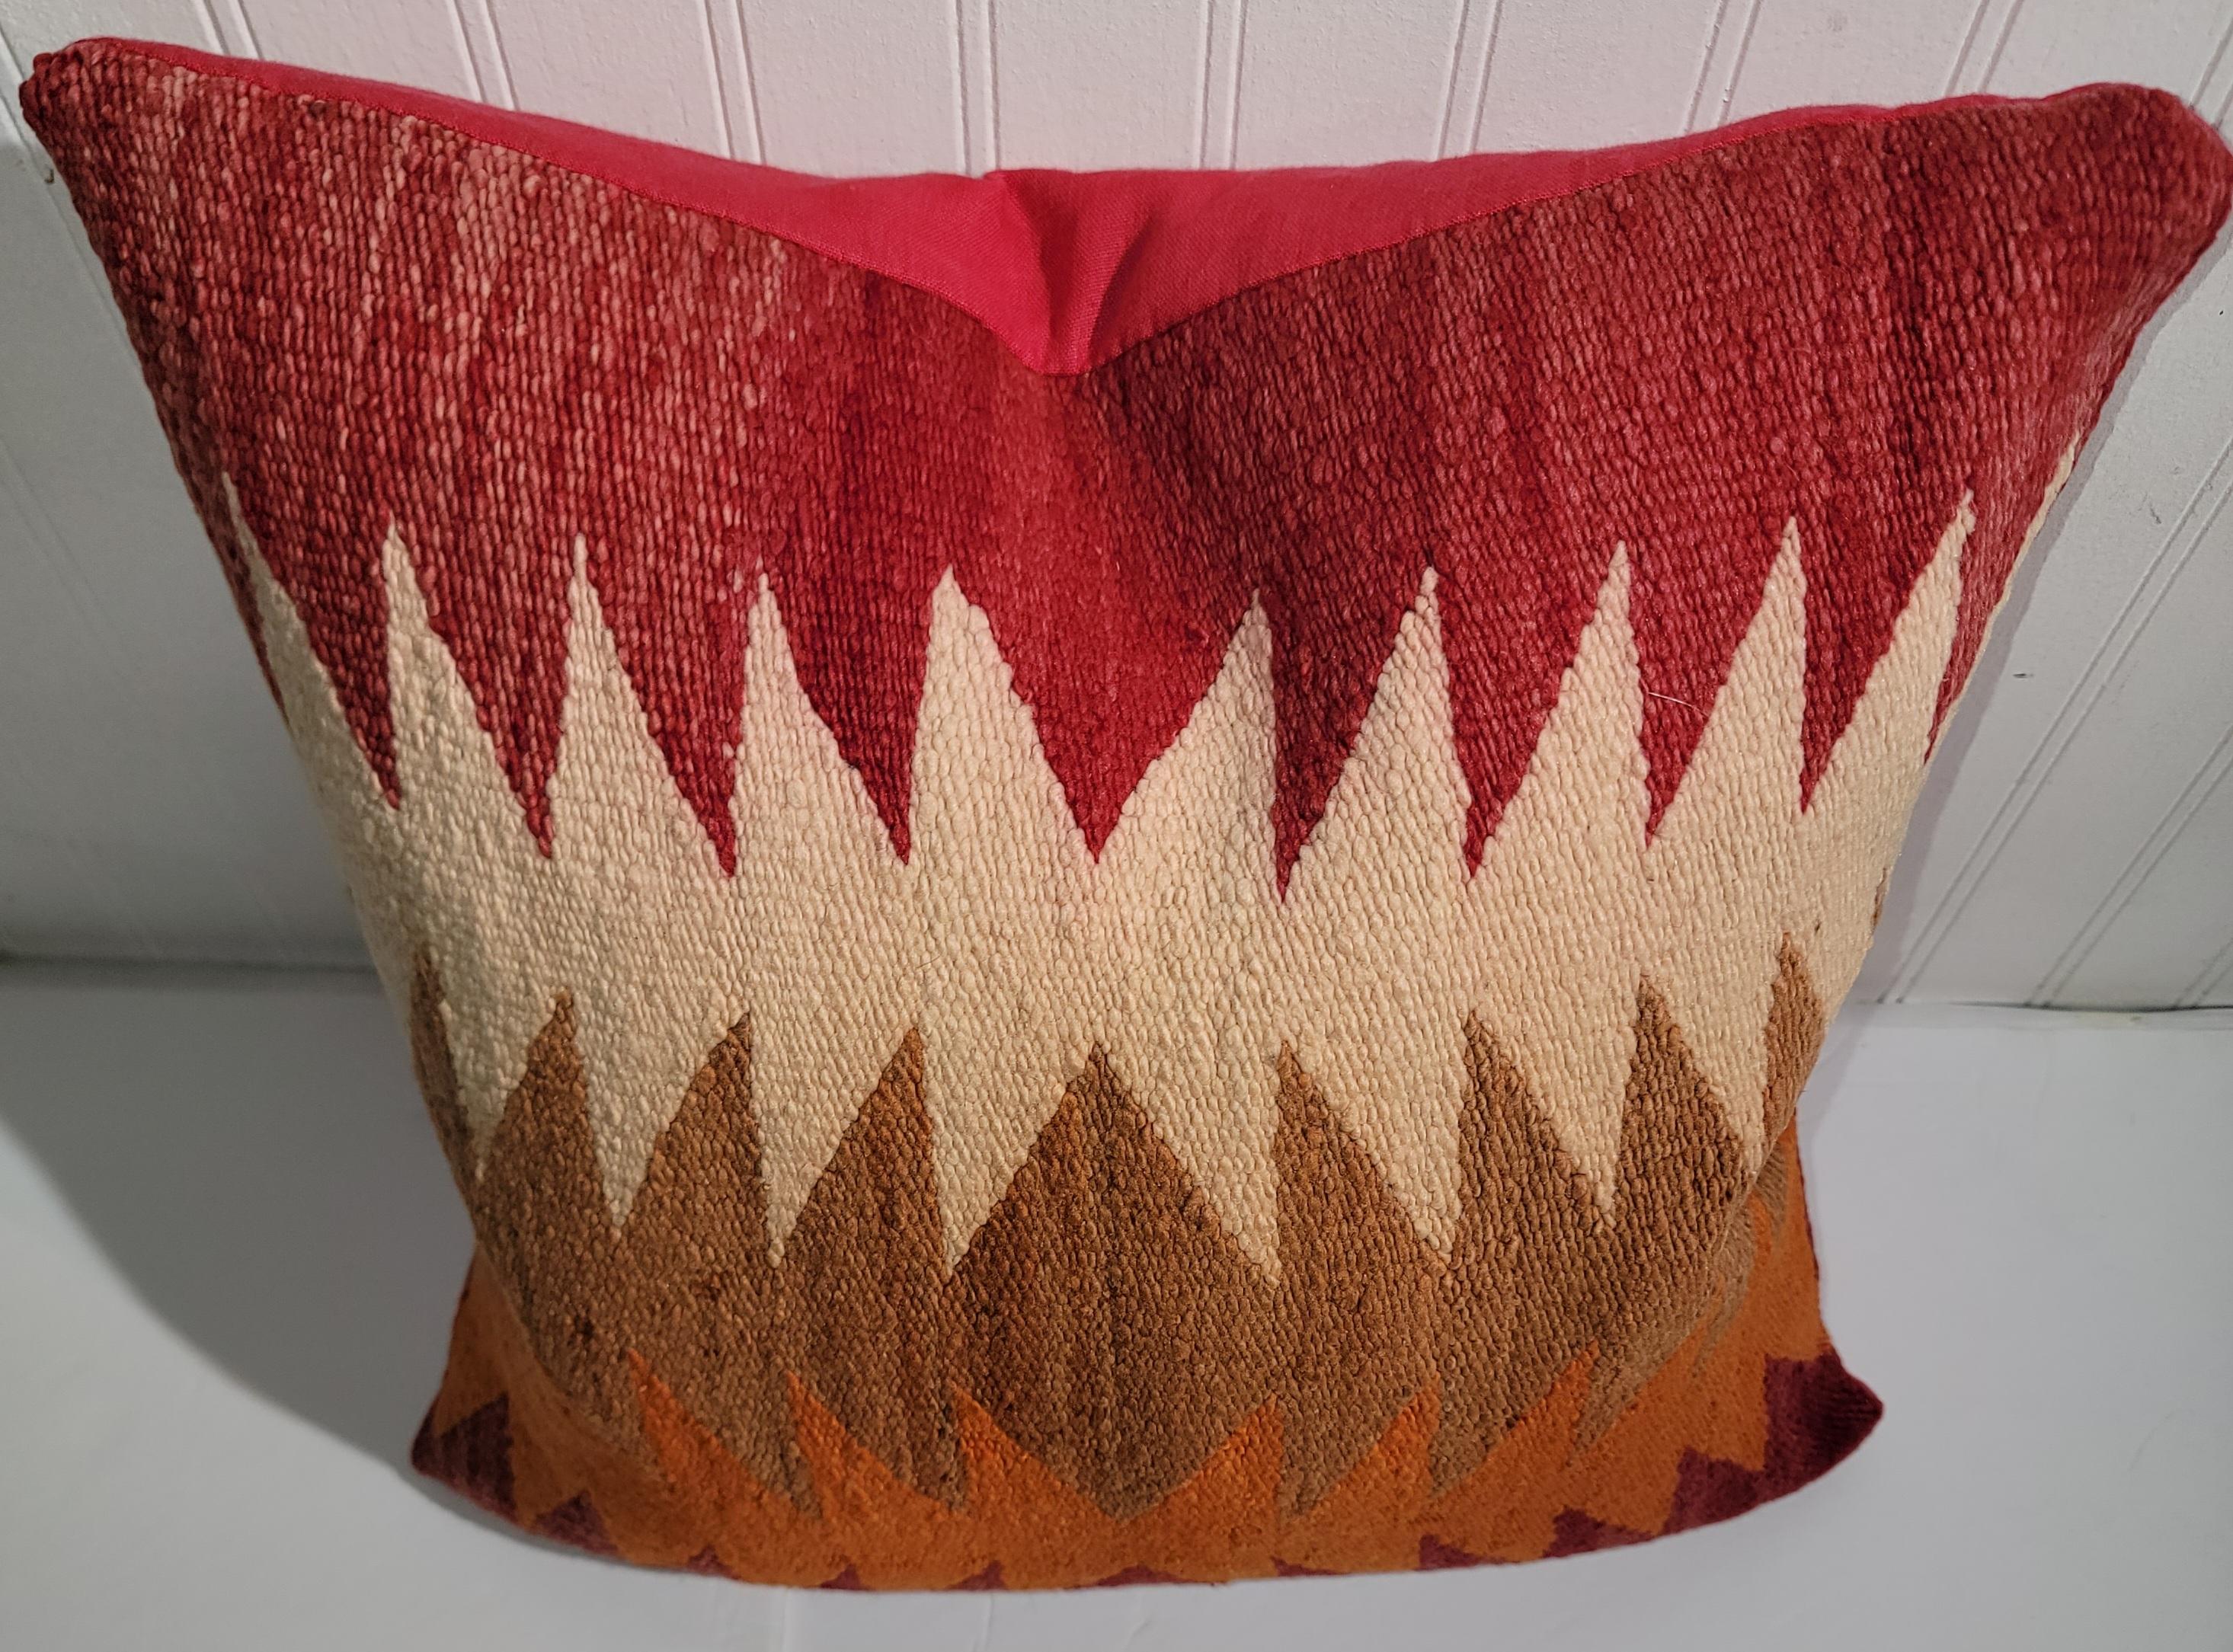 Navajo-Wollkissen mit Flammenstichmuster und roter Leinenunterlage. Tolle Farbe in einem Flammenmuster. Schöne Orange- und Rottöne, Weiß- und Brauntöne. Wunderschönes Design. 